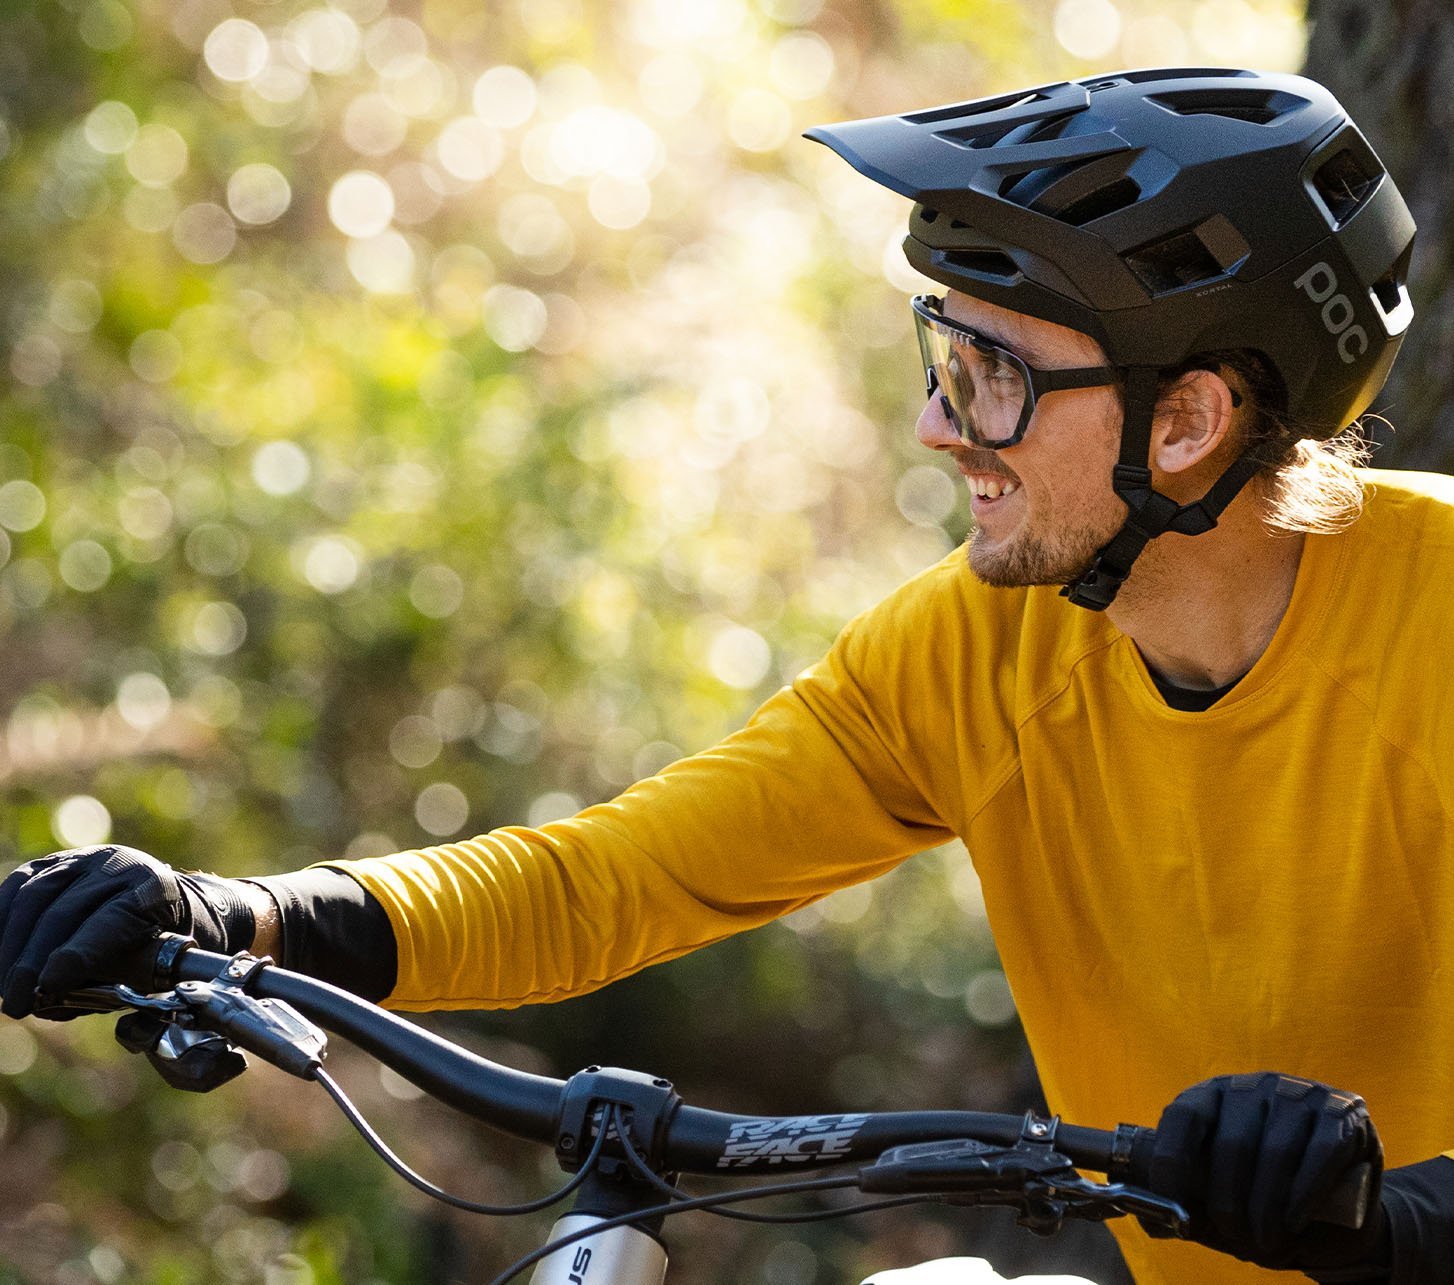 POC Protektoren, Helme & Fahrradbekleidung für MTB und Rennrad -  bike-components